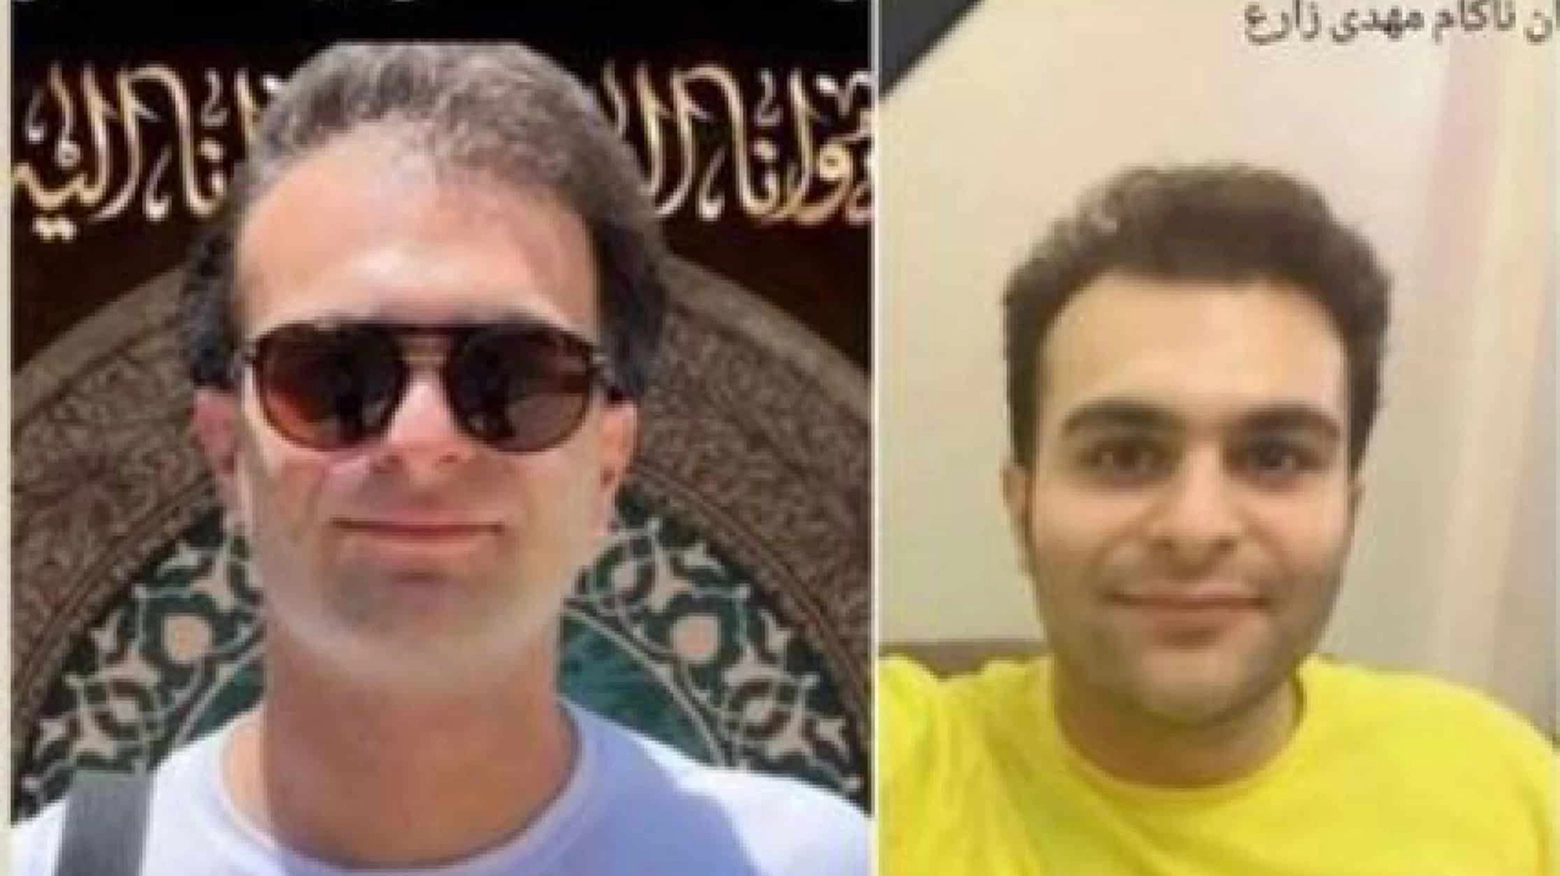 Morto in Iran dopo venti giorni di coma a seguito di torture Mehdi Zare Ashkzari (30 anni)_ aveva studiato e lavorato a Bologna